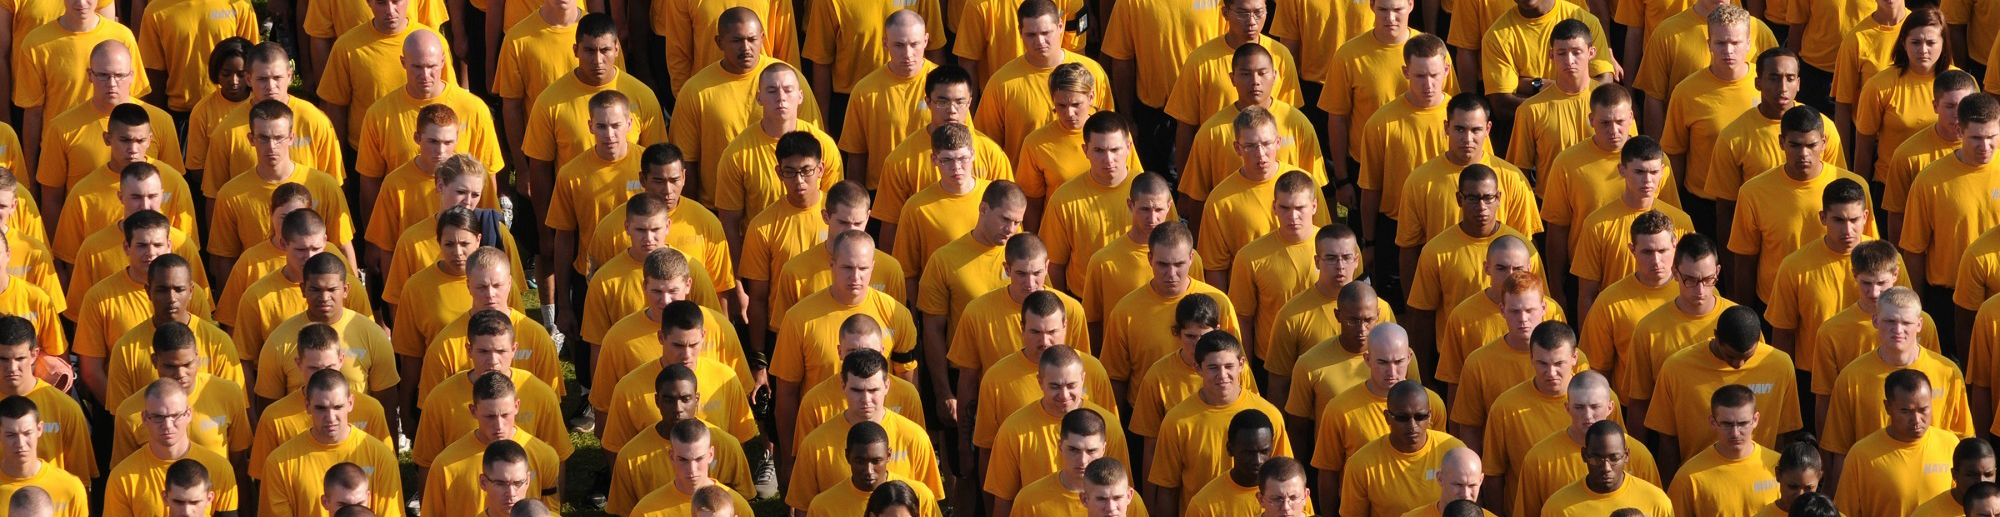 一群穿着黄色衬衫的男人和女人肩并肩站成一排。